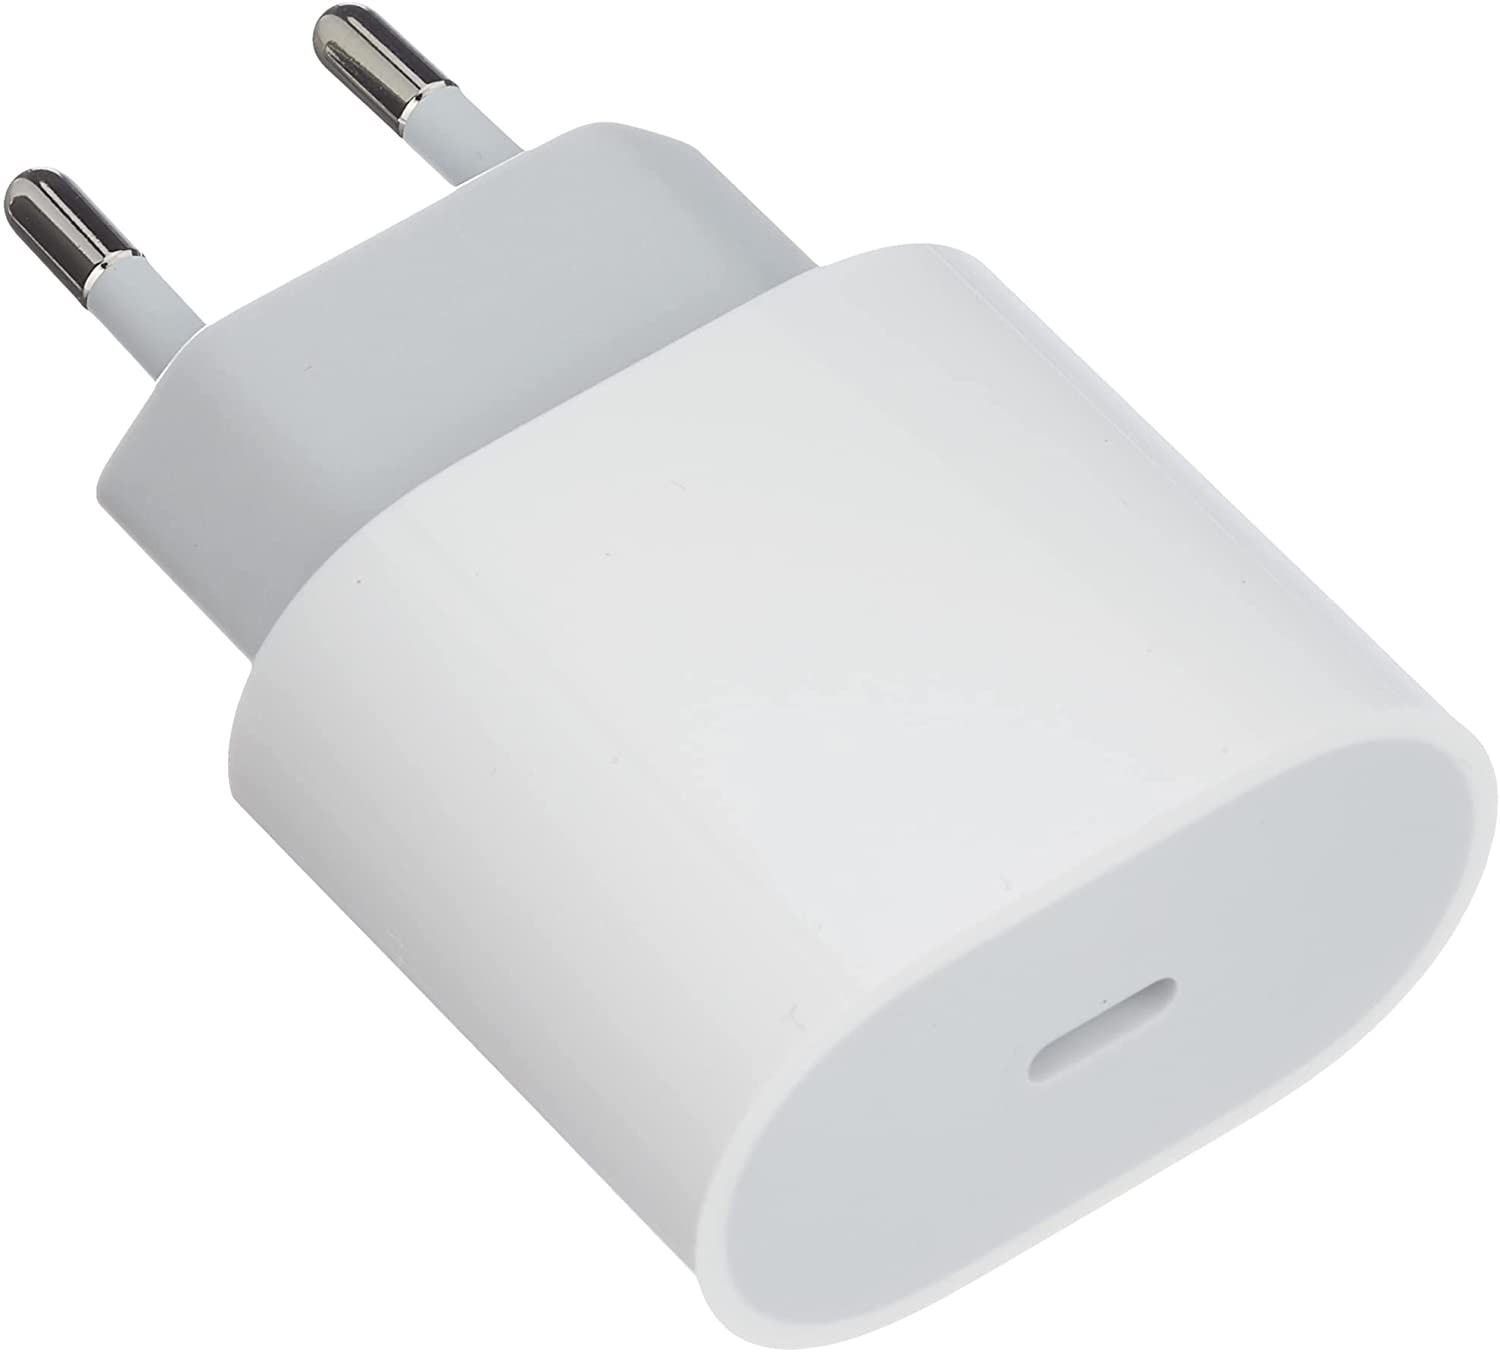 Et Apple 20 W USB-C Power Adapter mot hvit bakgrunn